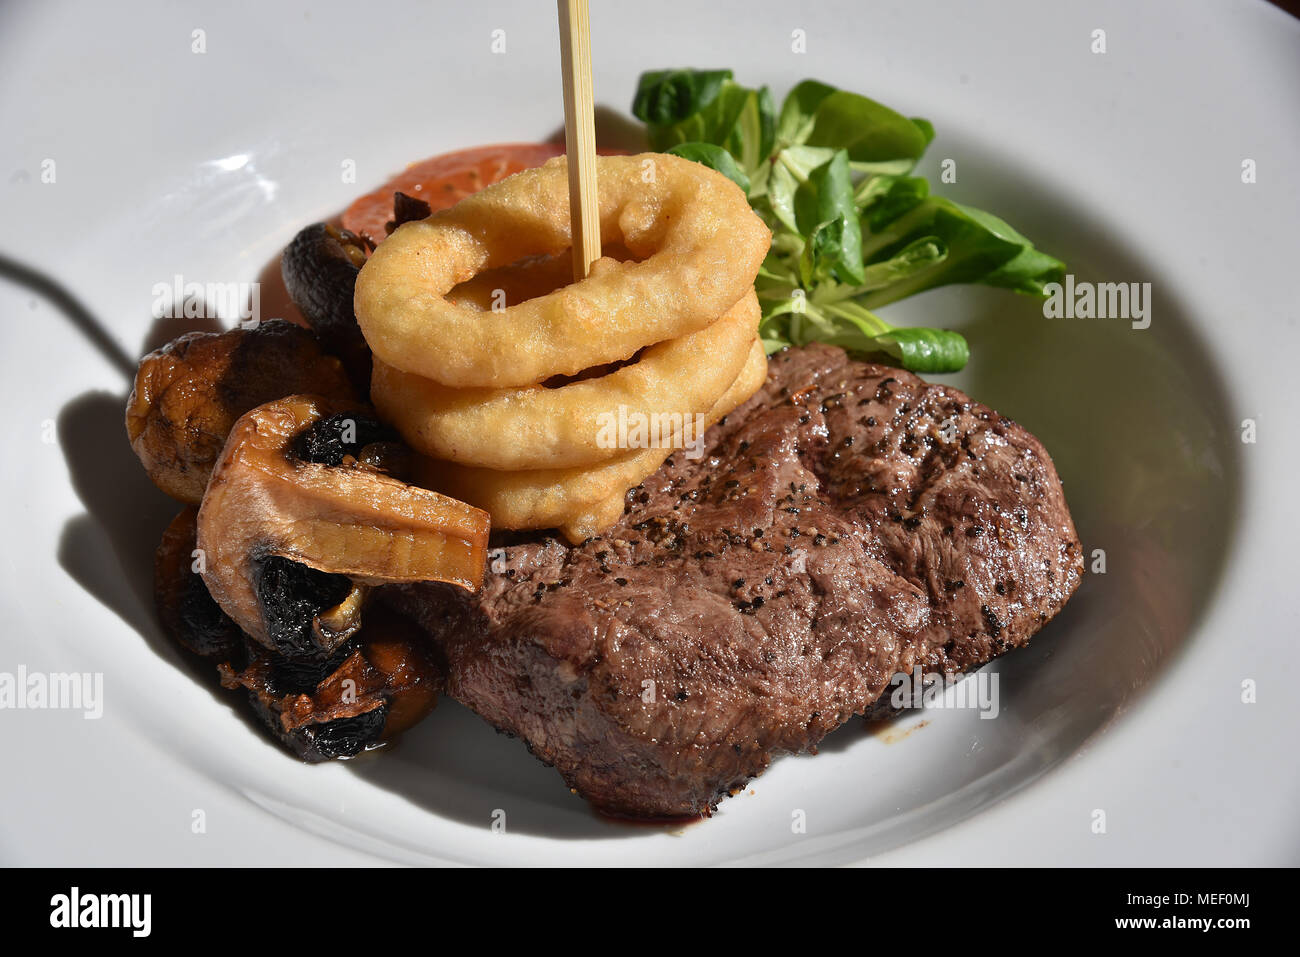 Les images montrent l'alimentation plaqué, fromage burger avec oignons tomate et laitue, un bifteck et champignons et bacon et repas un plat de poulet. Banque D'Images